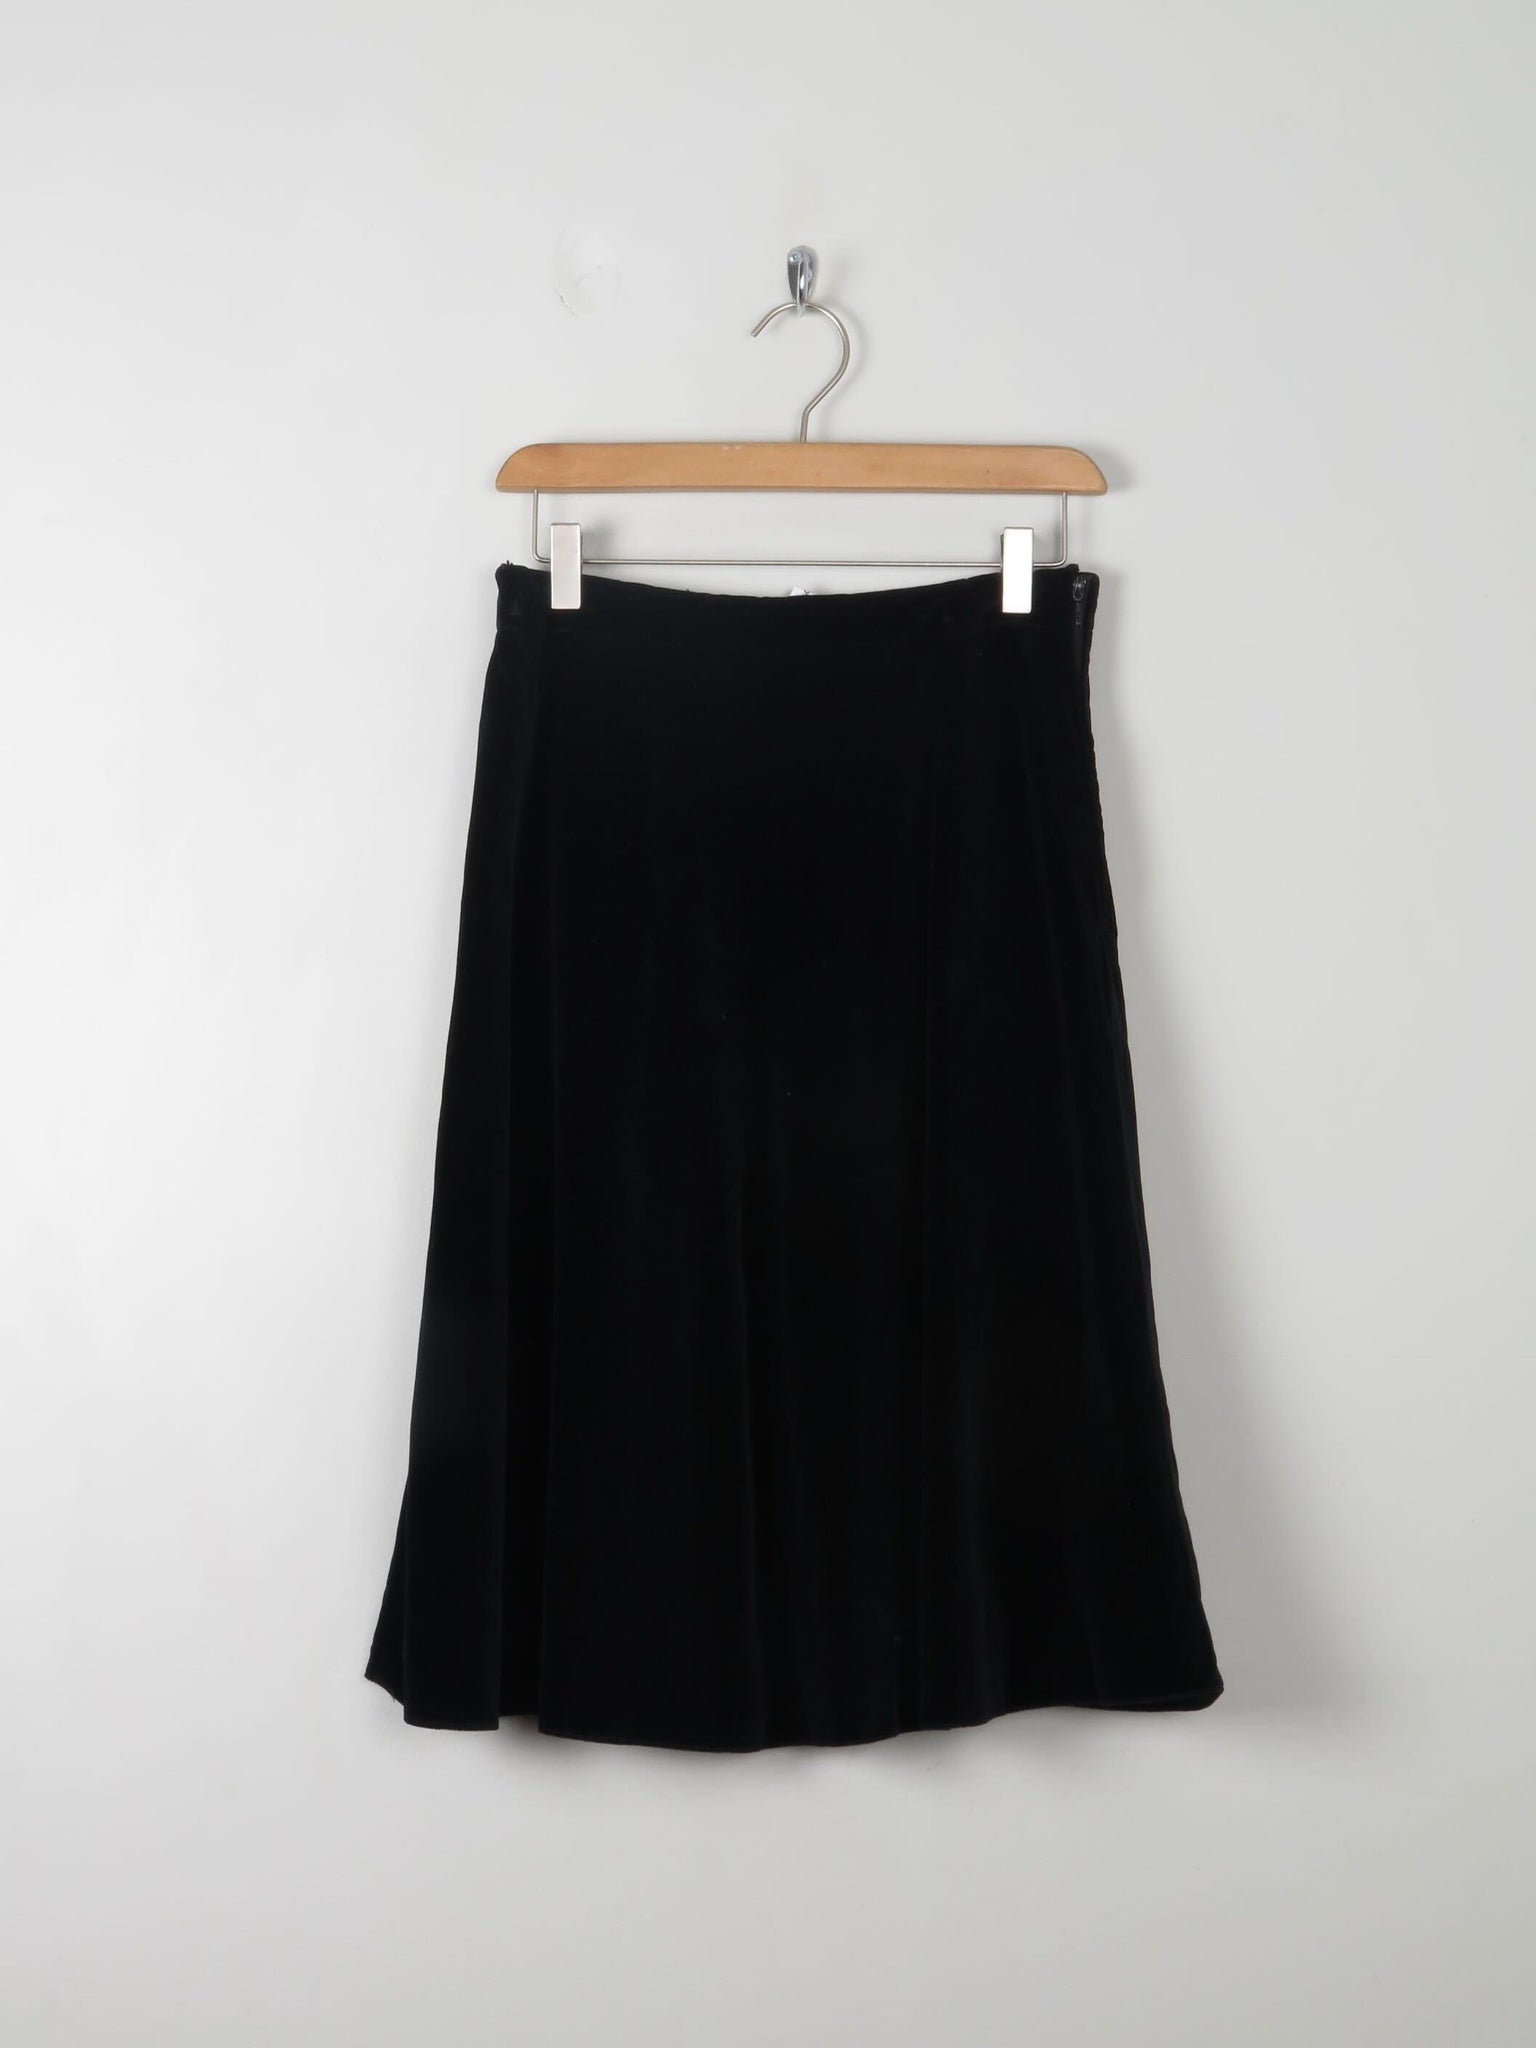 Vintage Black Velvet Skirt S 27" - The Harlequin